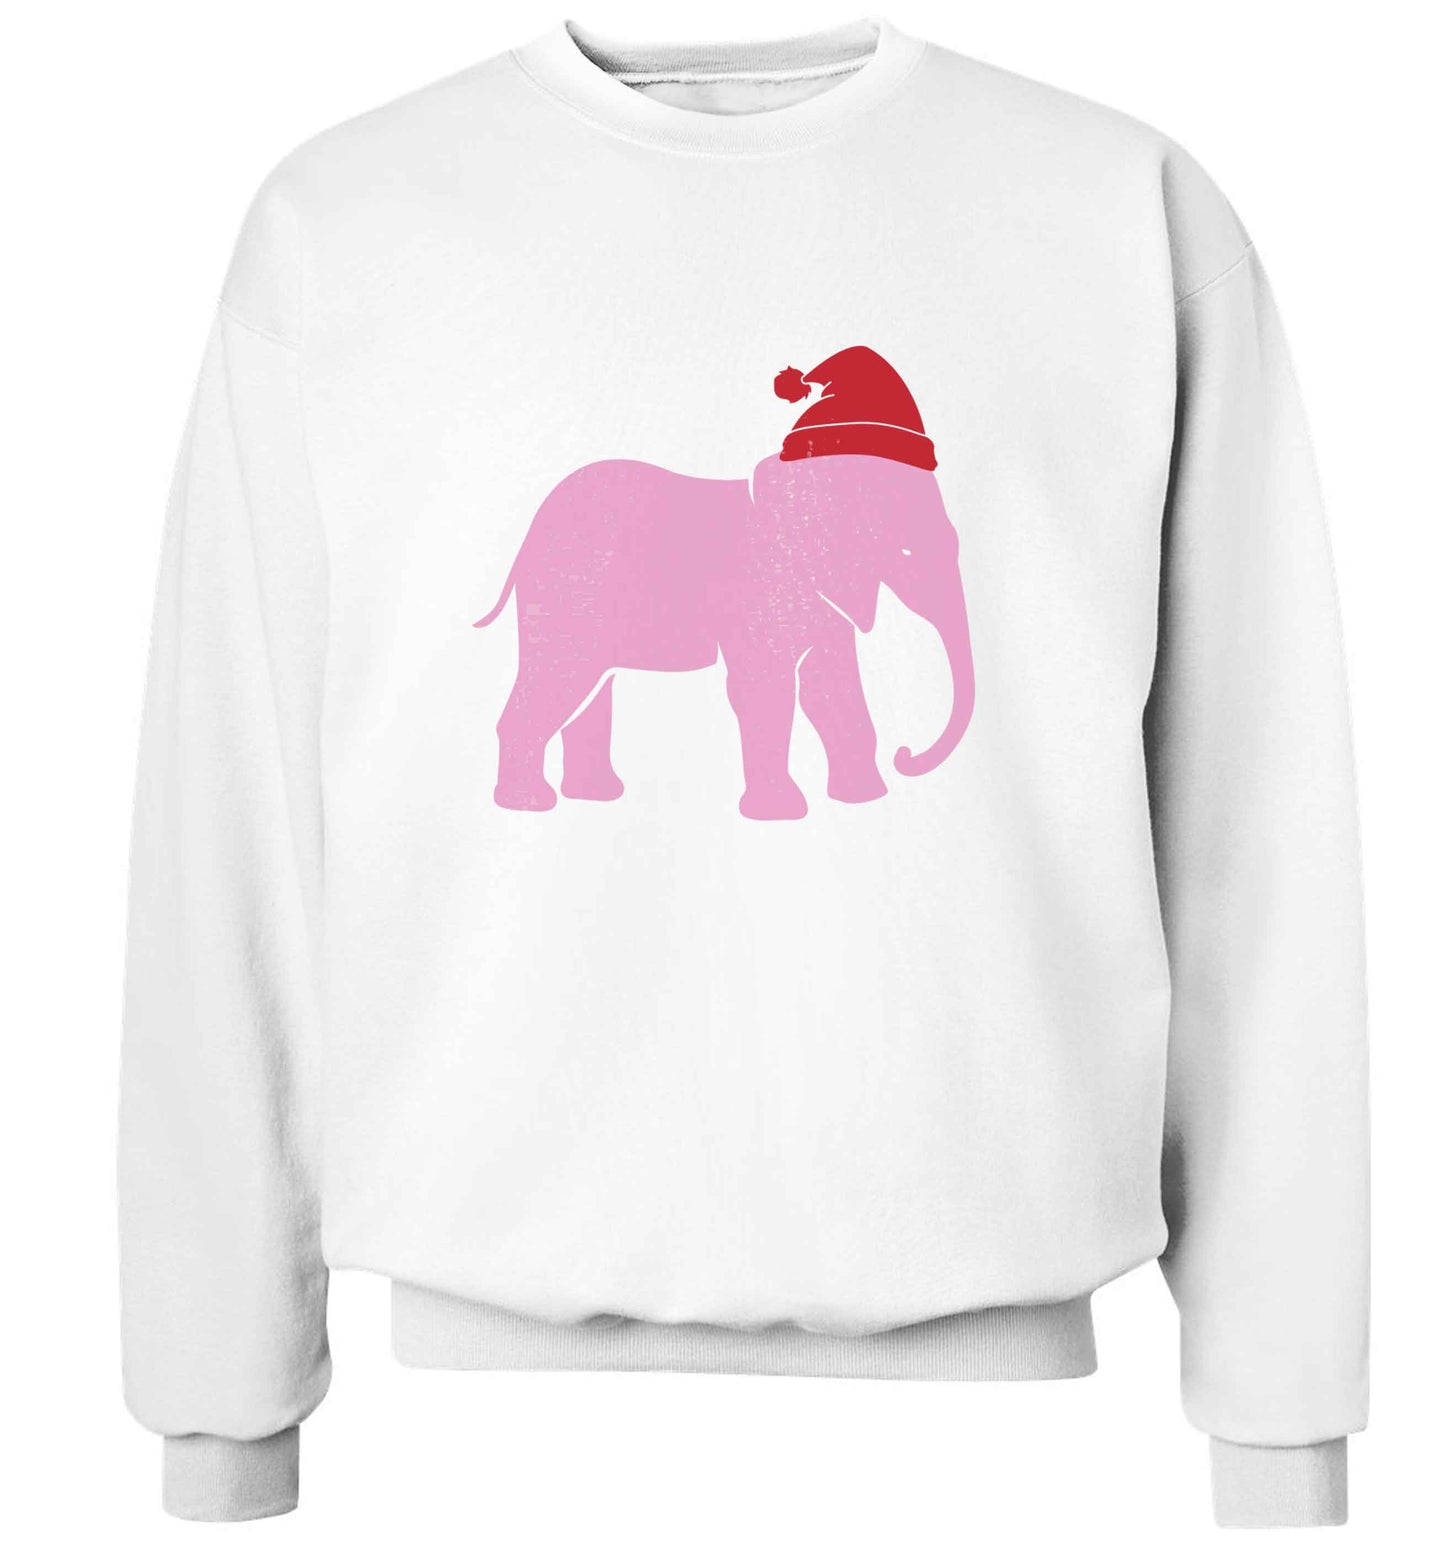 Pink elephant Santa adult's unisex white sweater 2XL